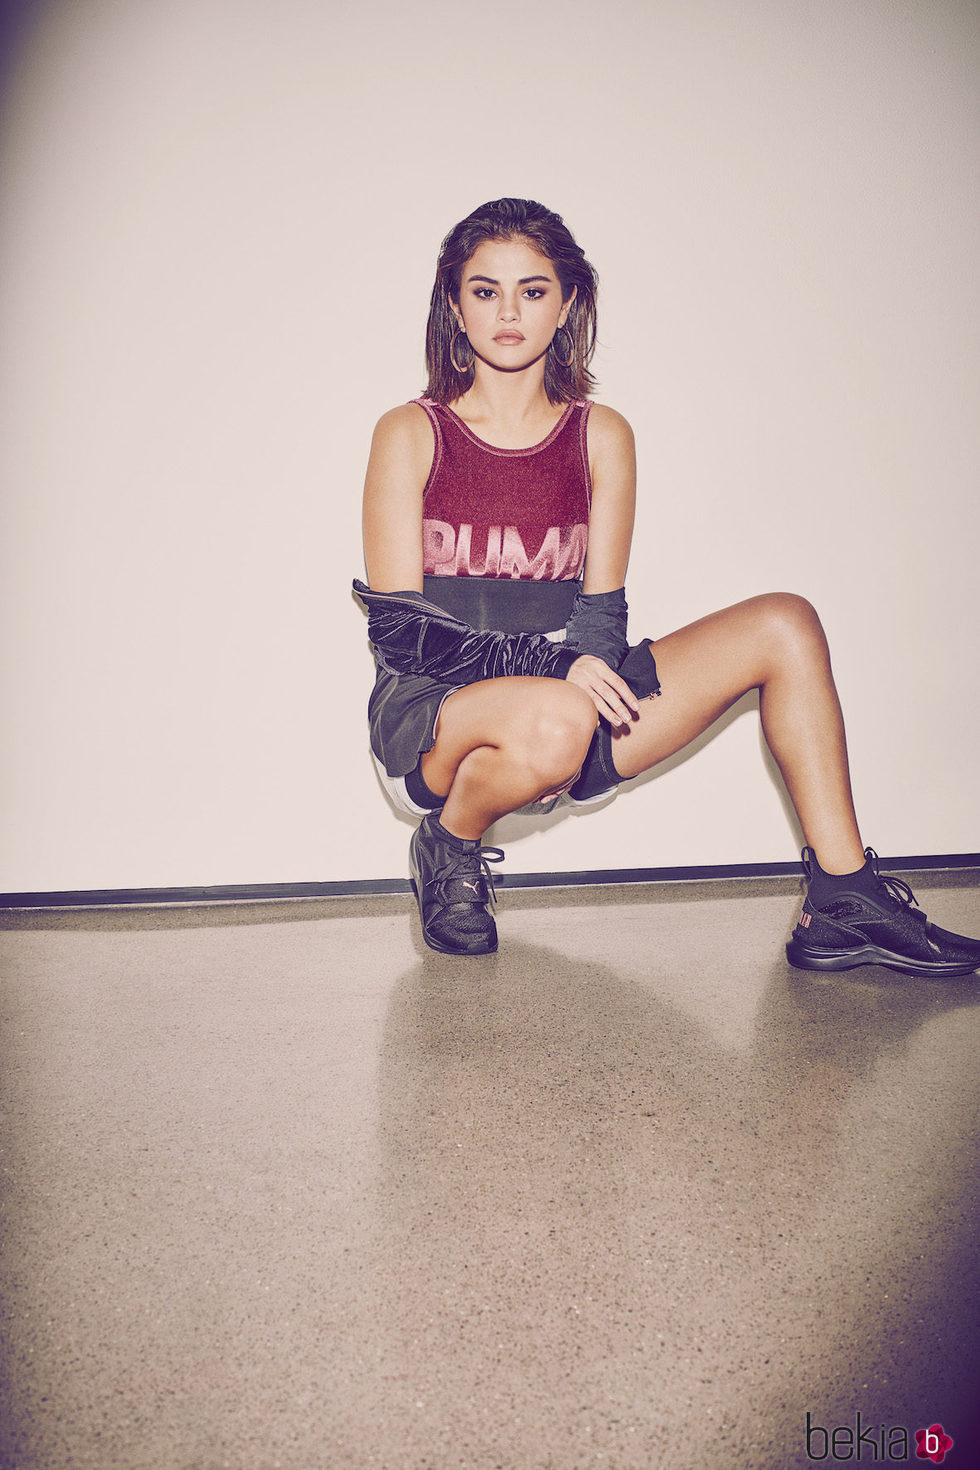 Foto promocional con la que Selena Gomez anuncia su colaboración con Puma 2017